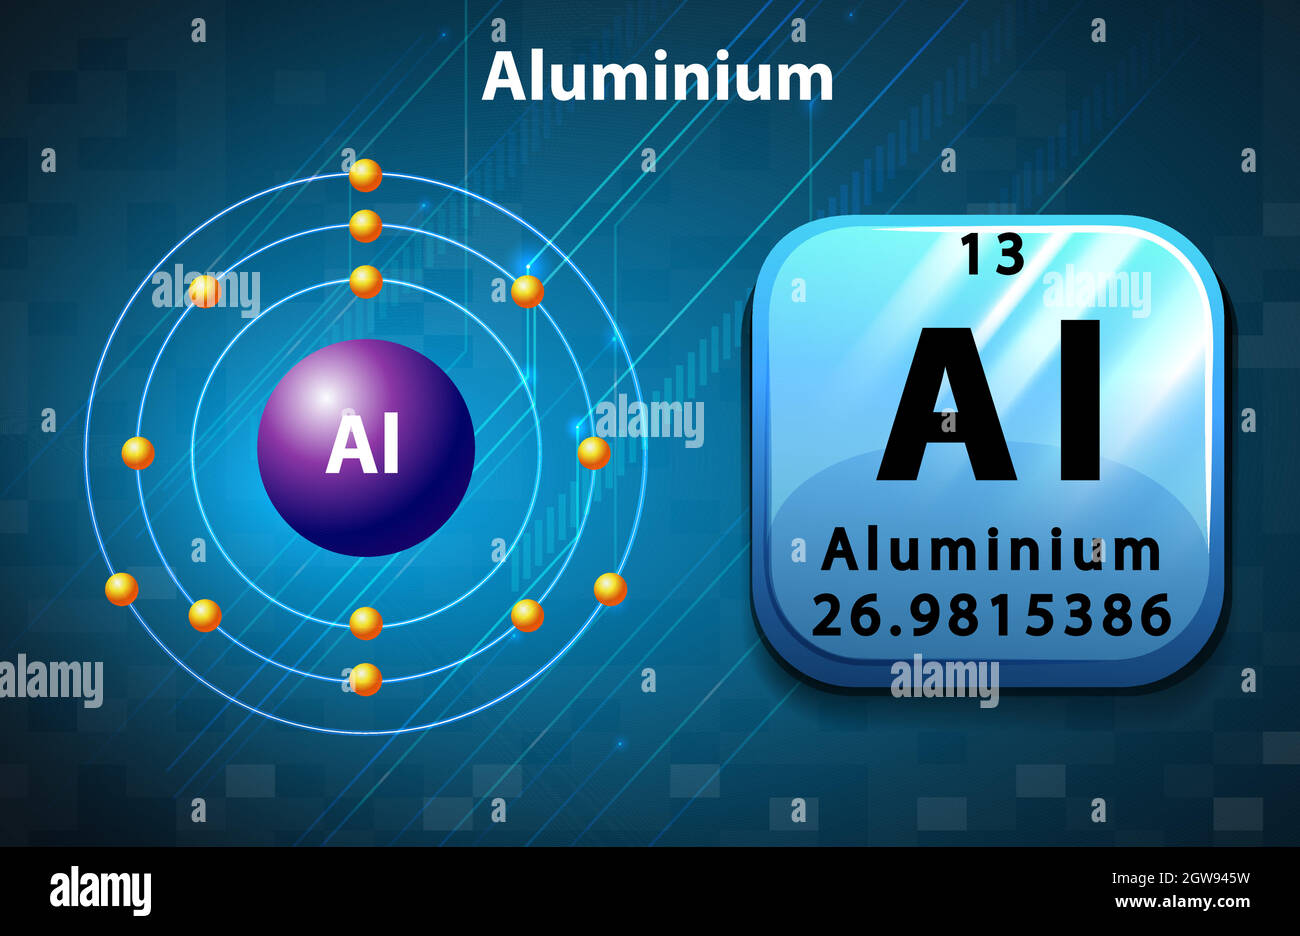 Нейтральный атом алюминия. Атом алюминия. Модель атома алюминия. Atom алюминий. Aluminium элемент.